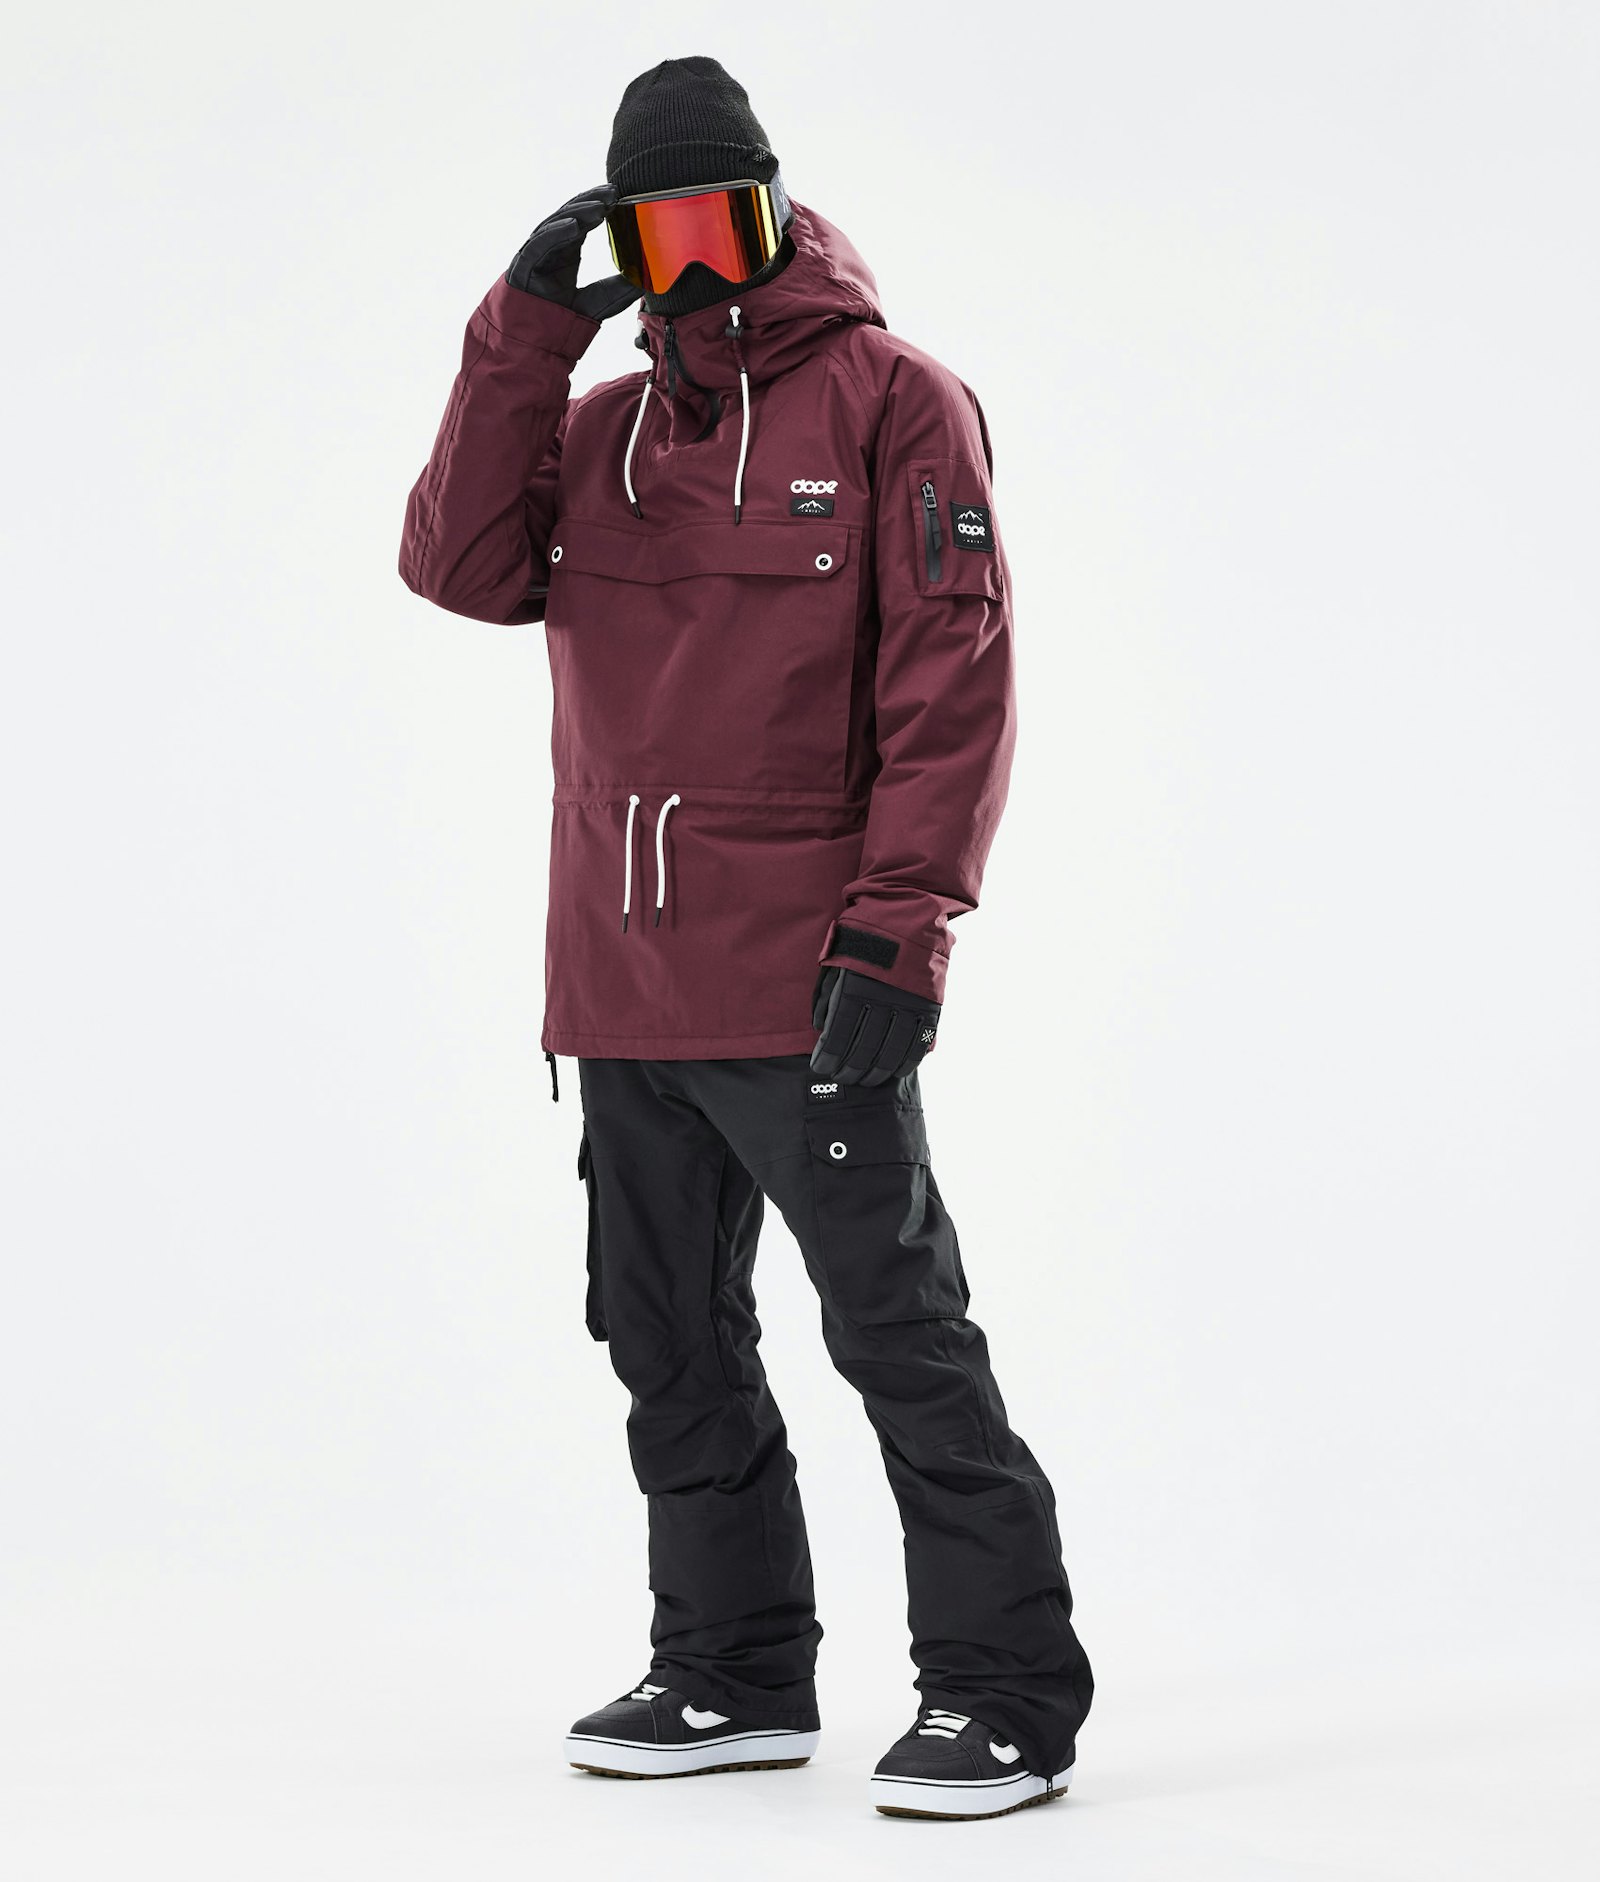 Annok 2021 Snowboard jas Heren Burgundy